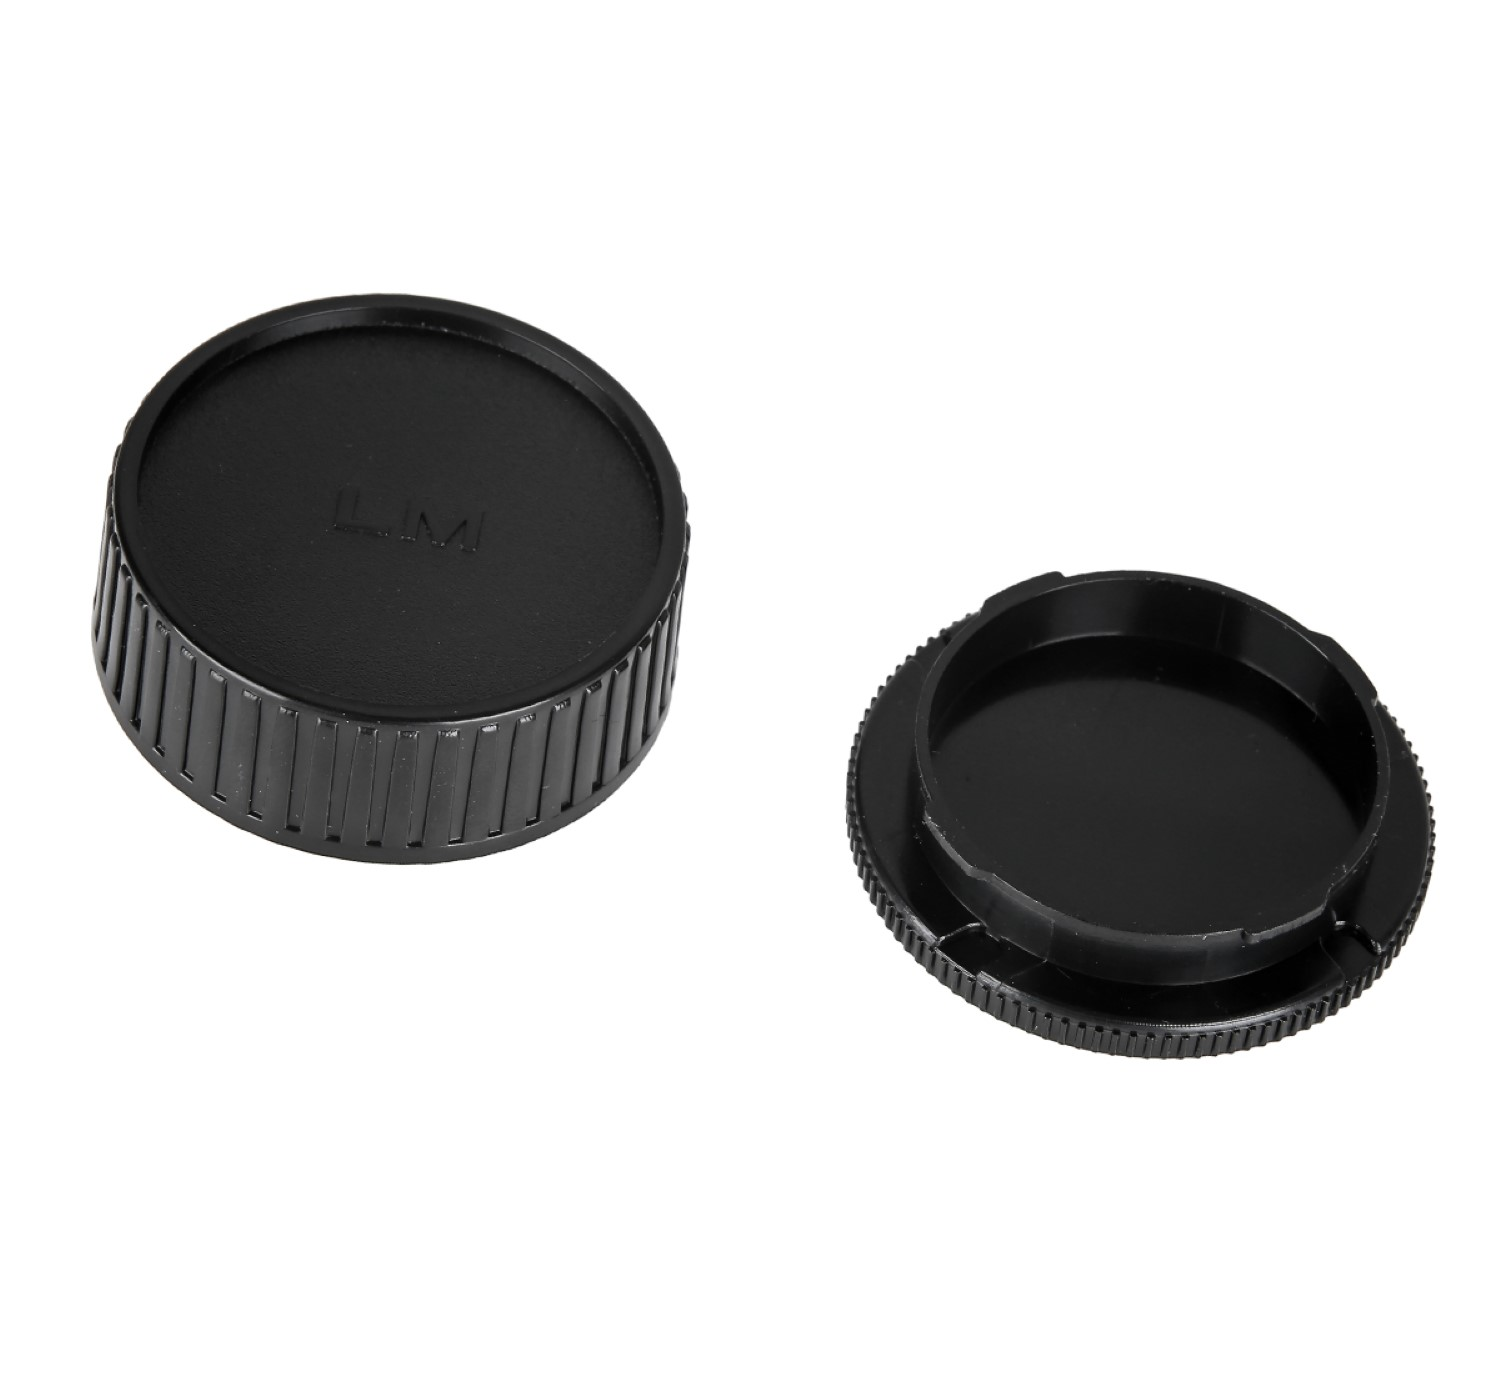 Gehäusedeckel, + passend Leica Black, Gehäusedeckel AYEX M Body Objektivdeckel, für